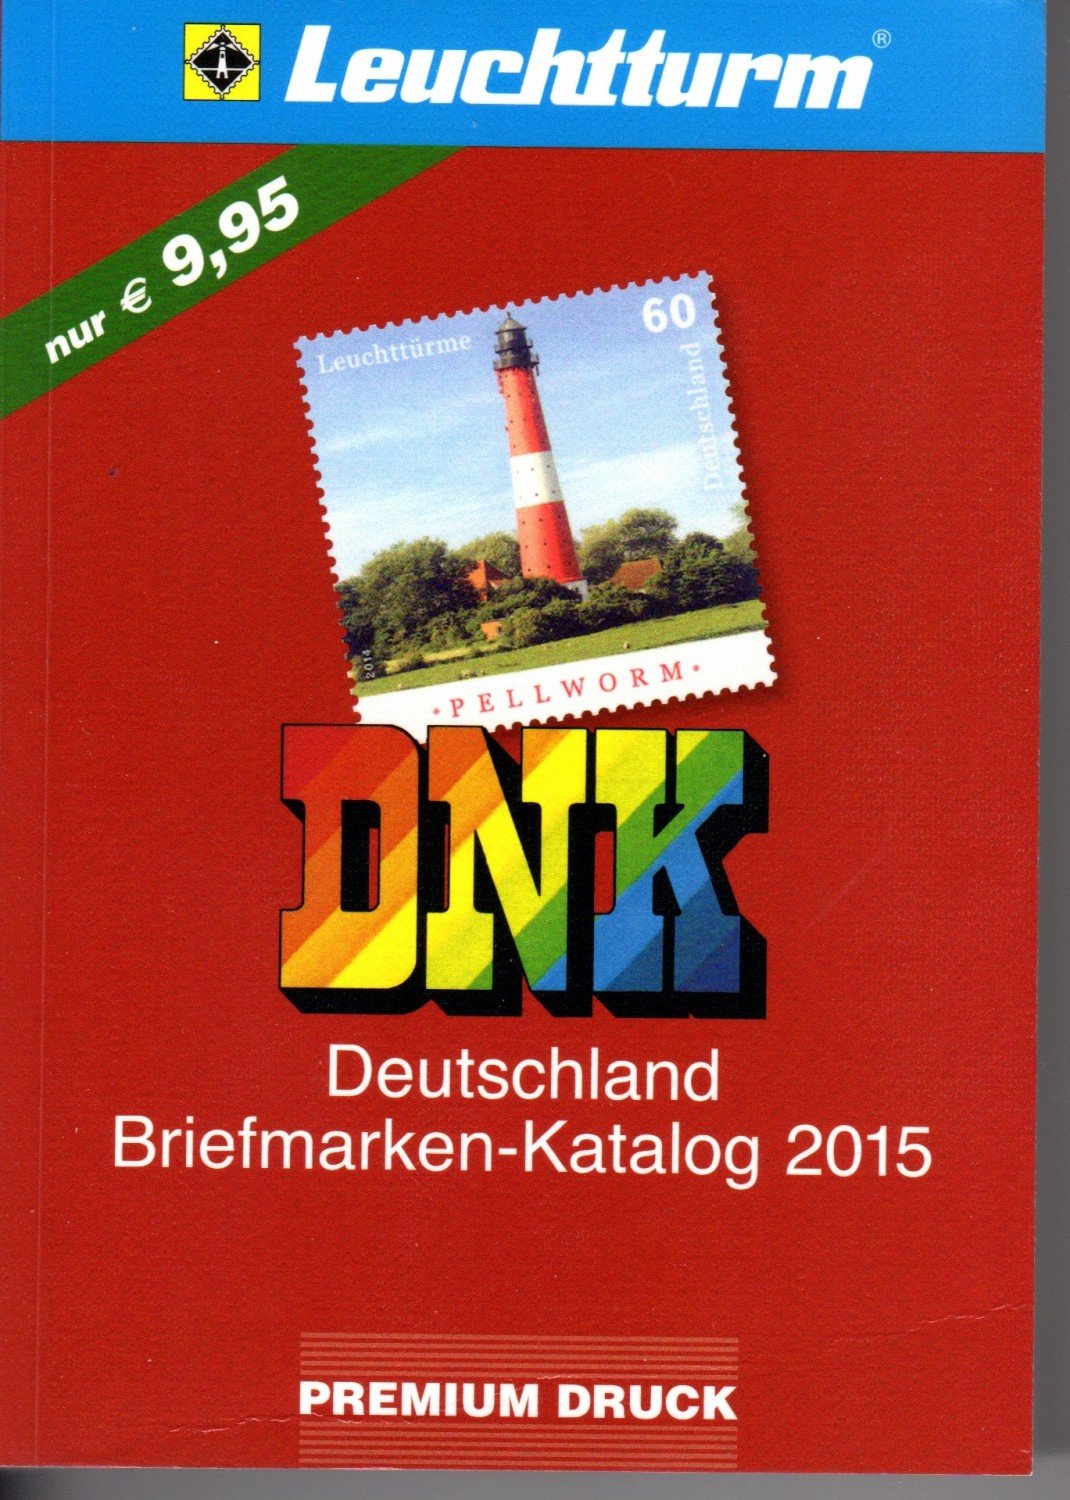 briefmarken katalog deutschland pdf